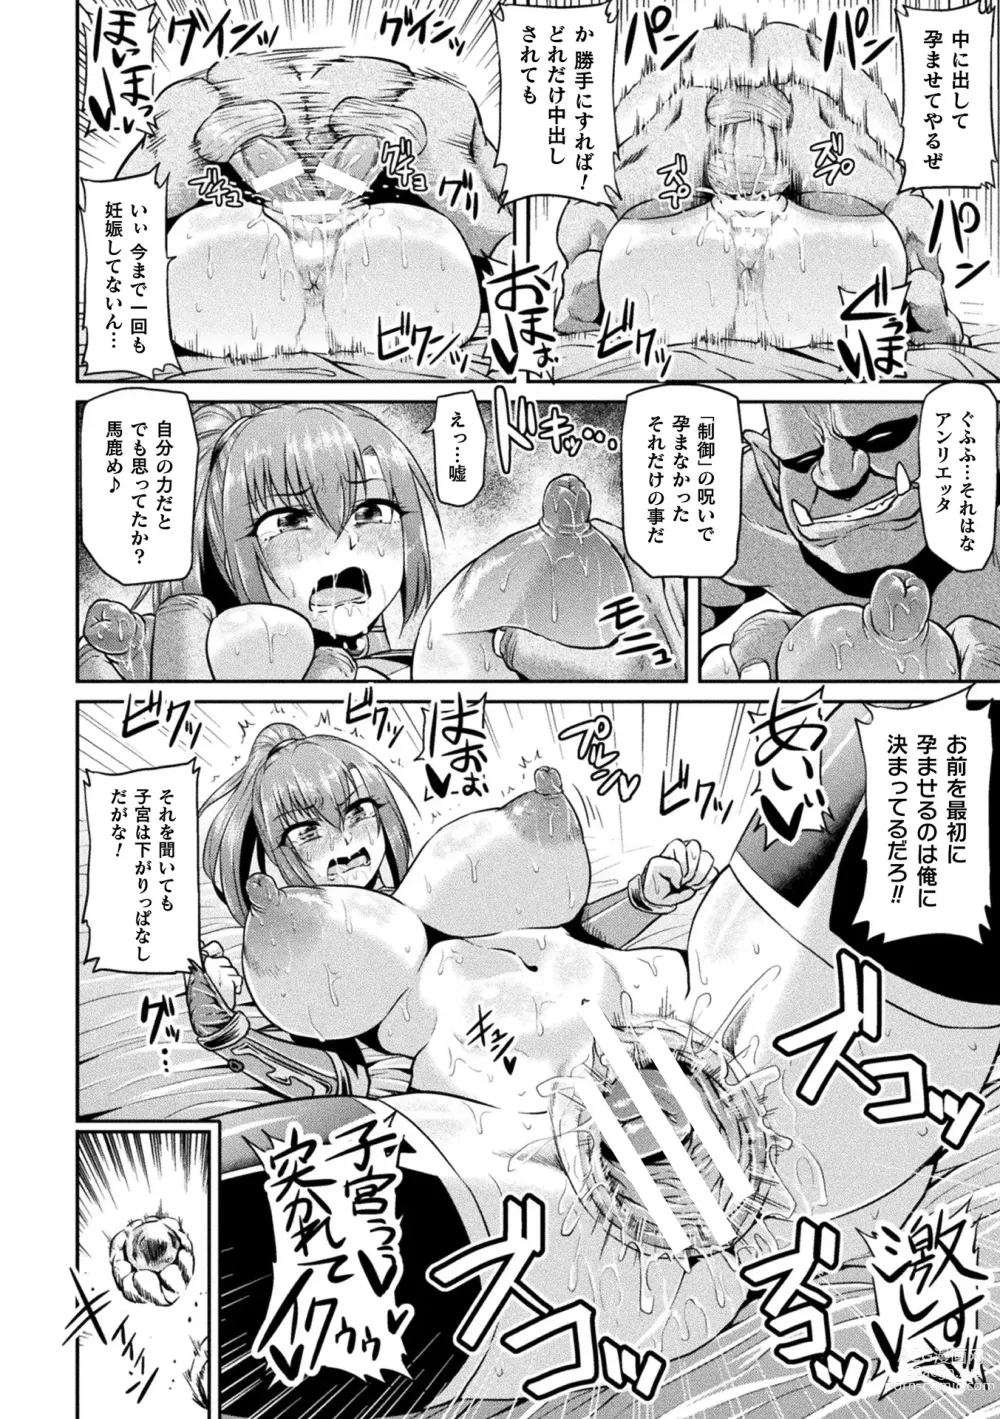 Page 162 of manga Ahegao o Sarashisu Midarana Otome